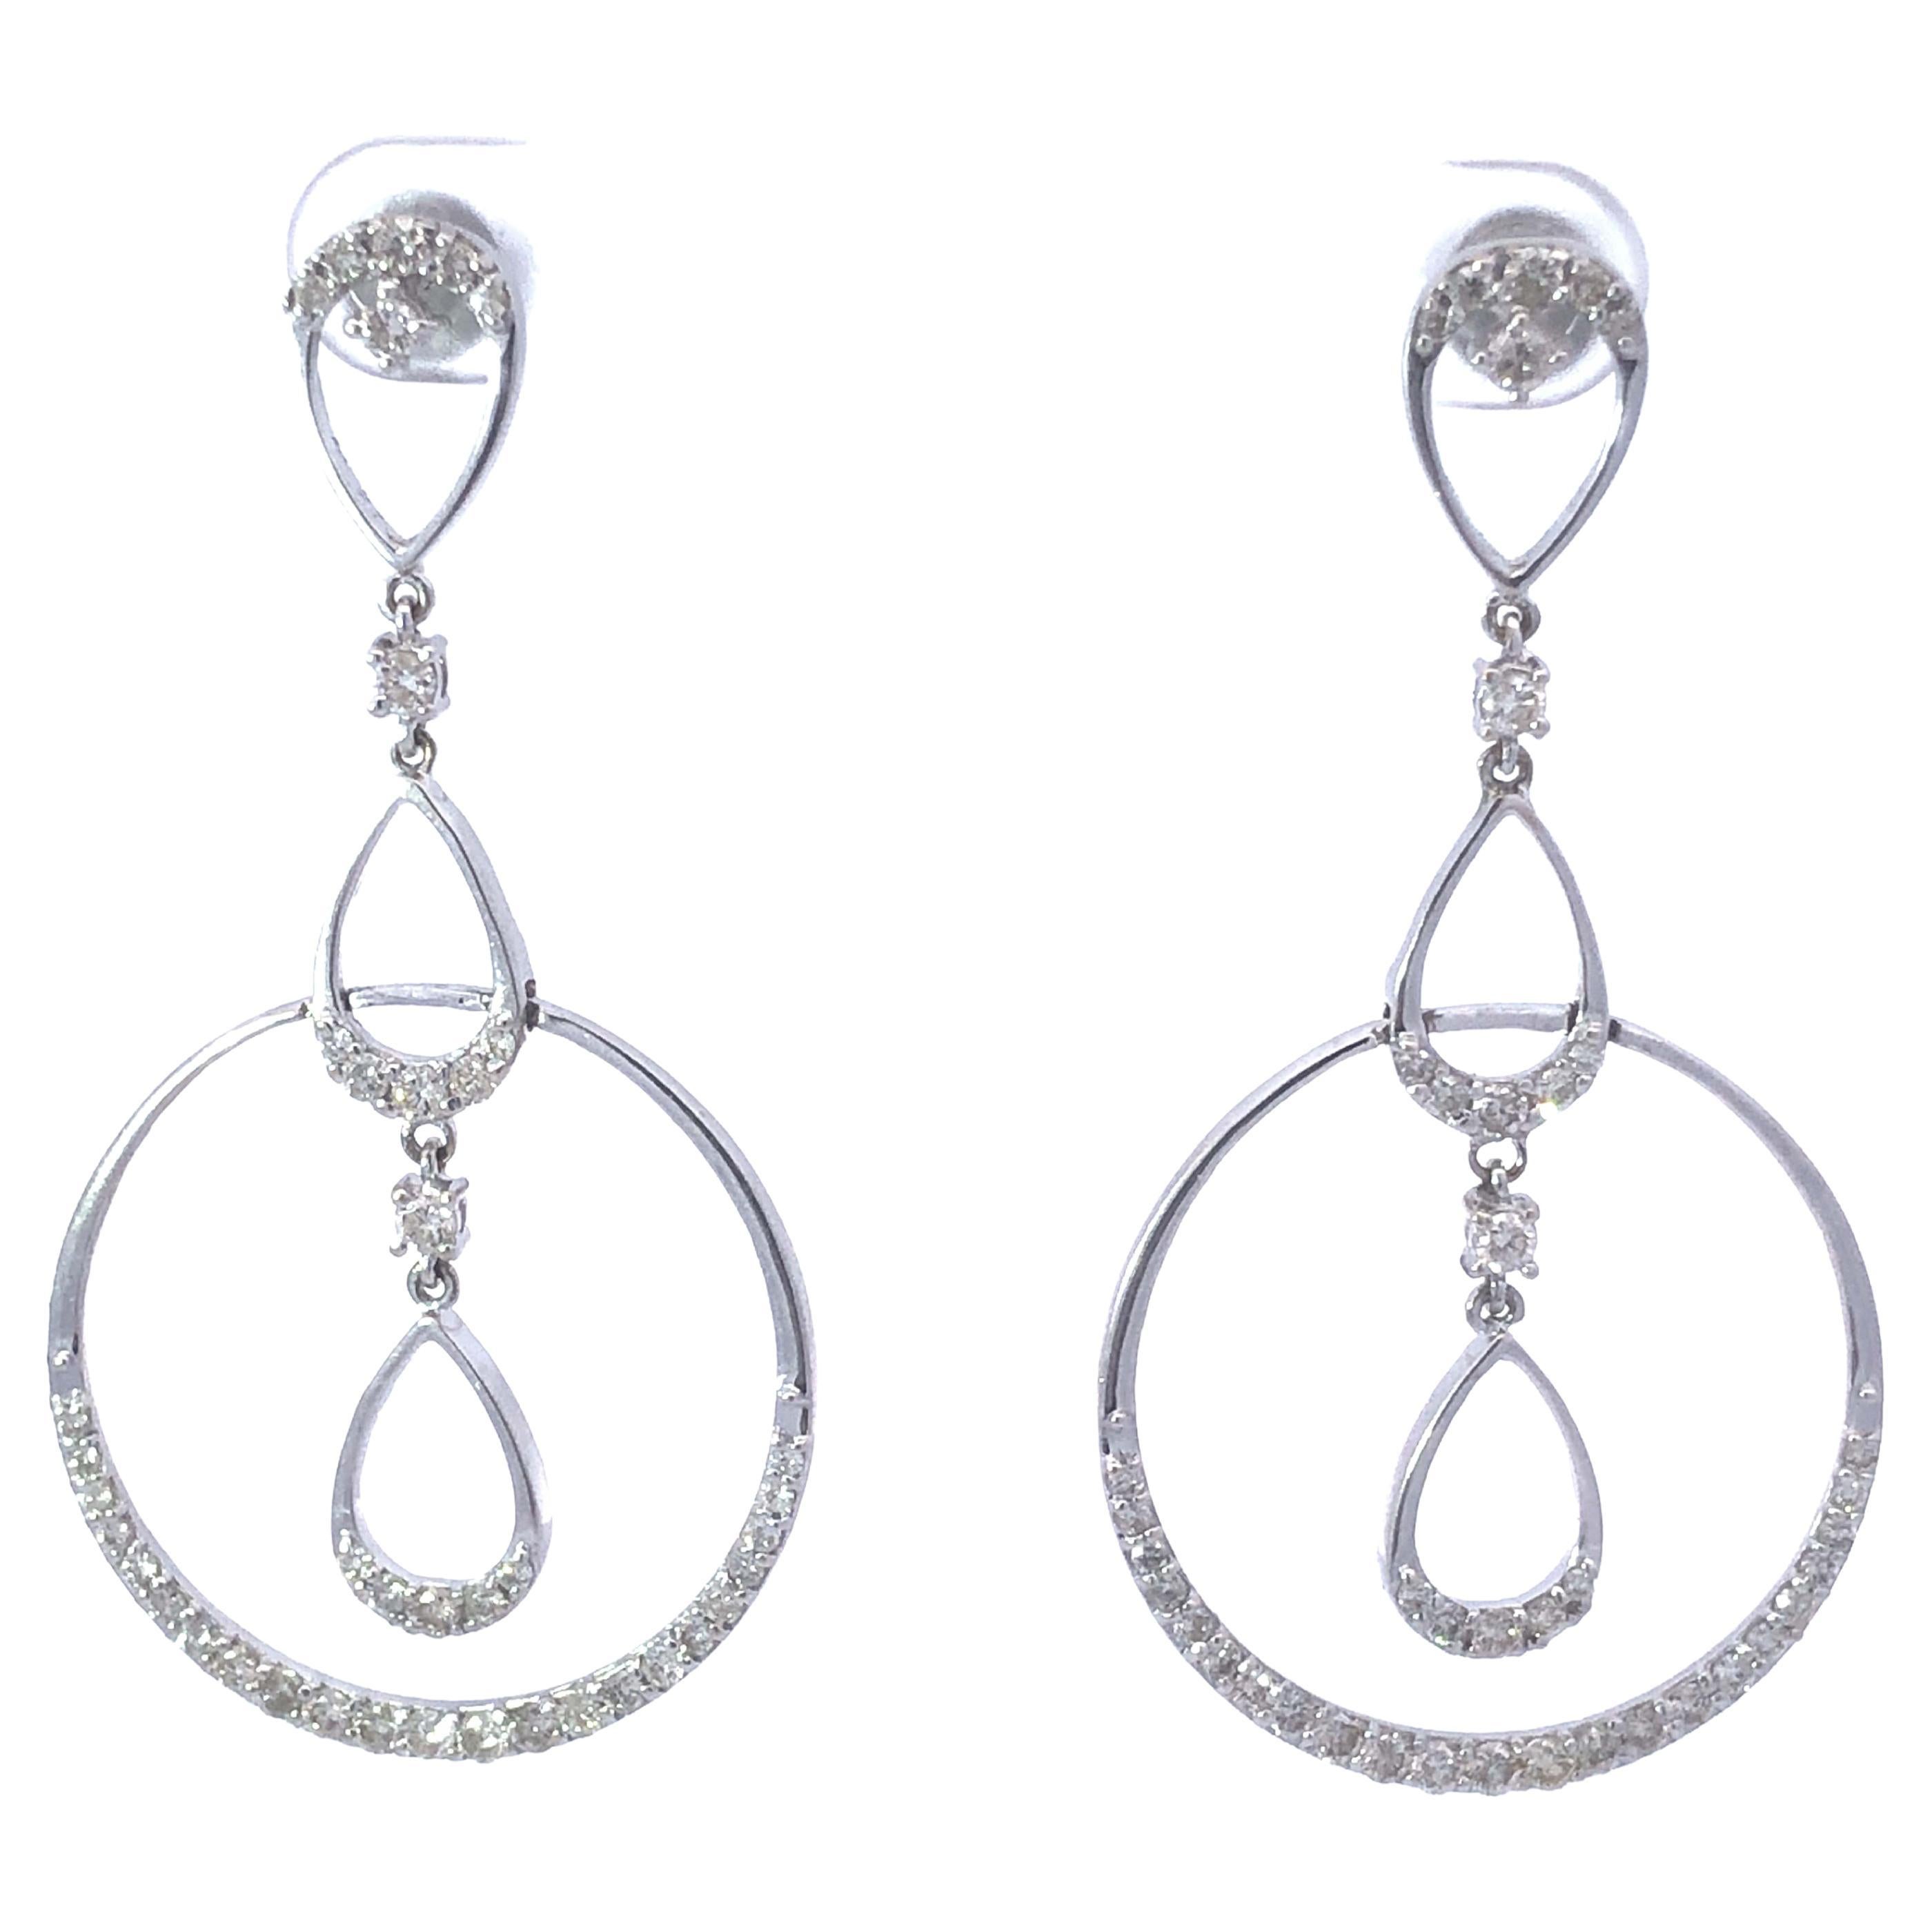 Triple Drop Dangly Diamond Earrings in 18k White Gold For Sale